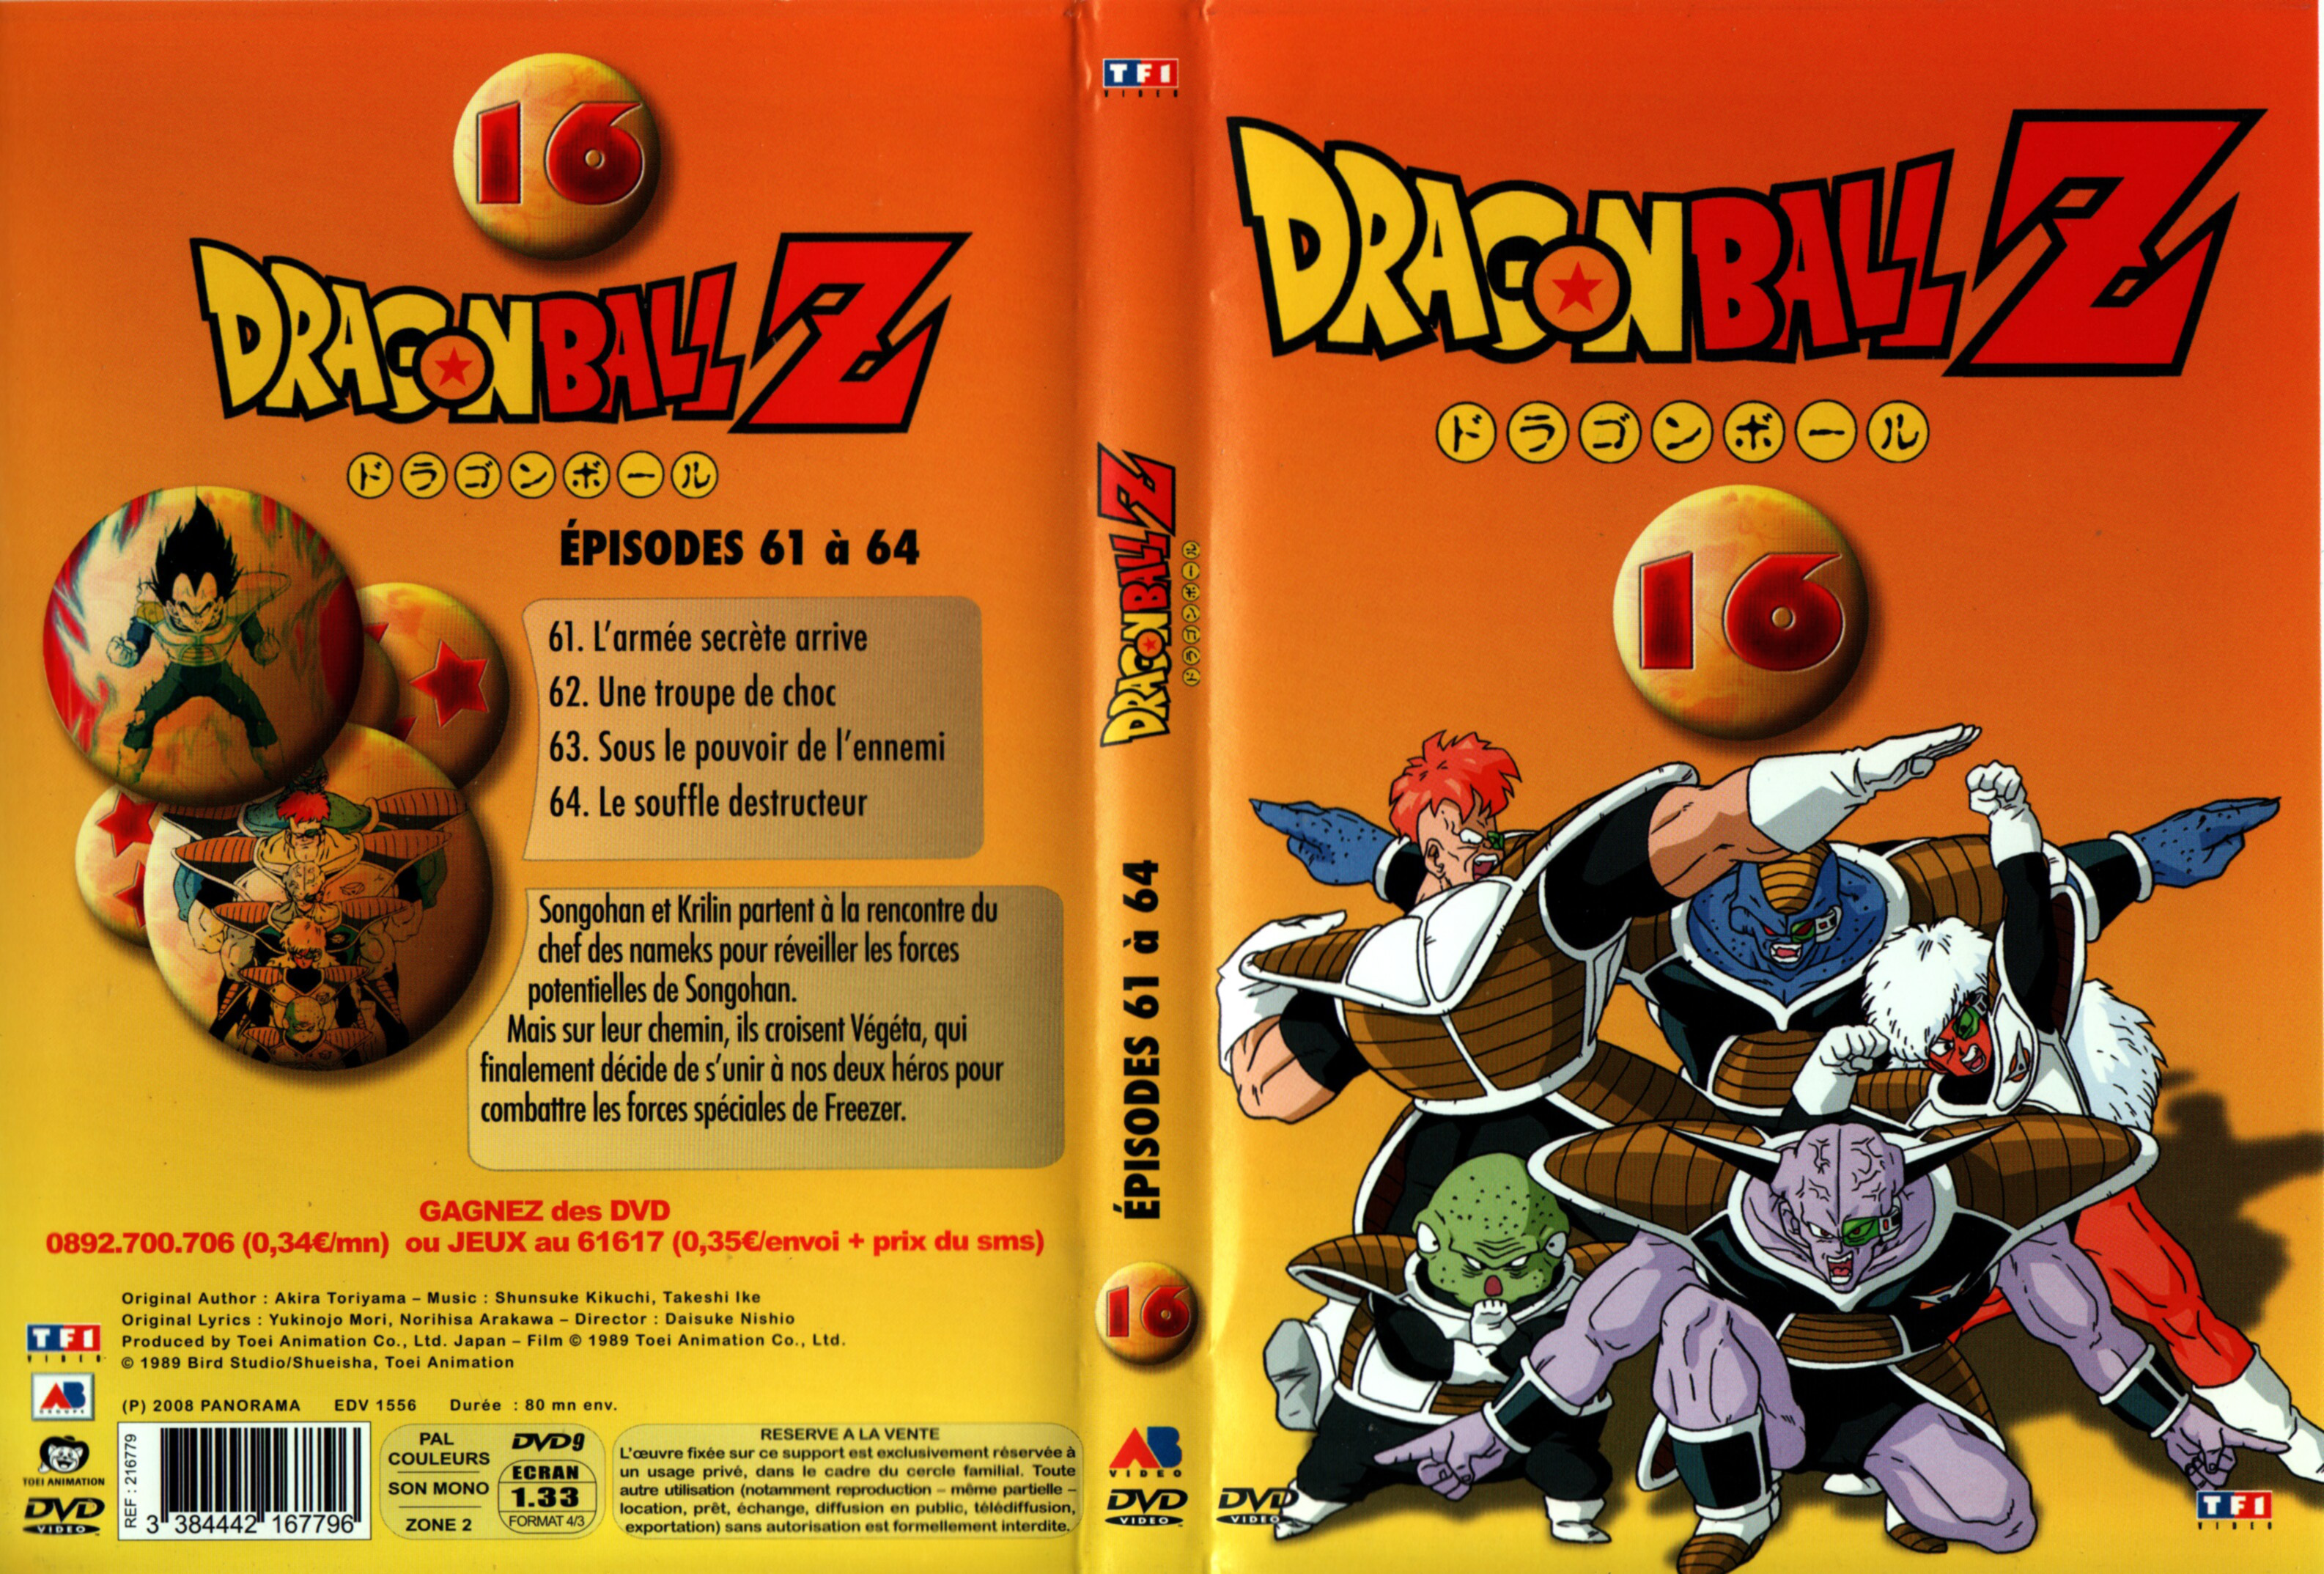 Jaquette DVD Dragon Ball Z vol 16 v2